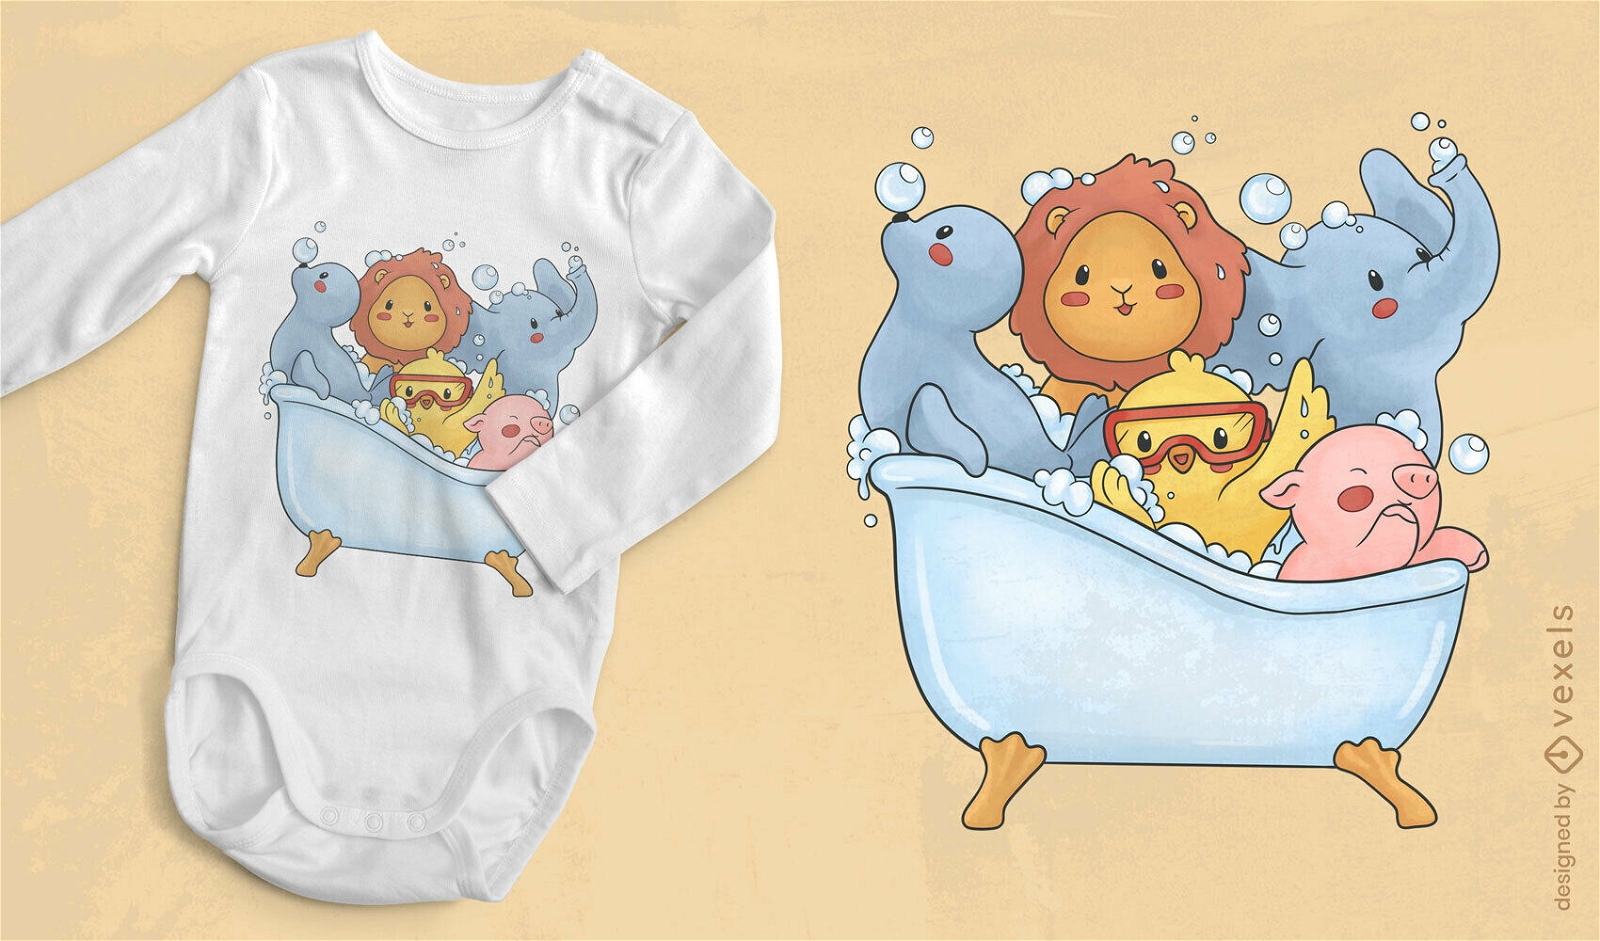 Animais de beb? em design de camiseta de banheira